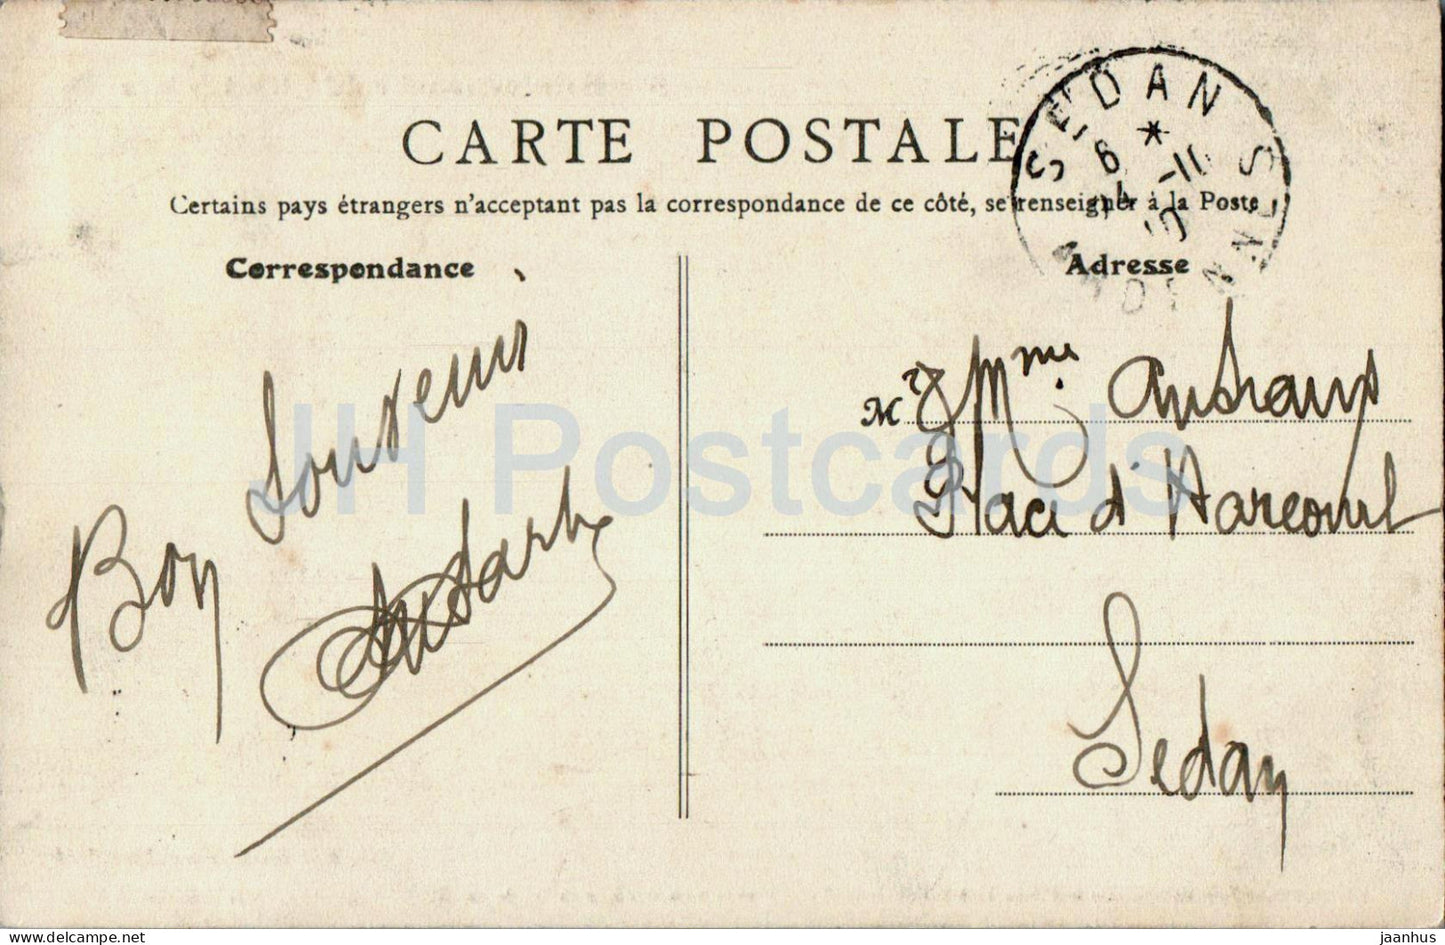 Sainte Menehould – Chambre historique de la Famille Royale – 8 – alte Postkarte – 1910 – Frankreich – gebraucht 